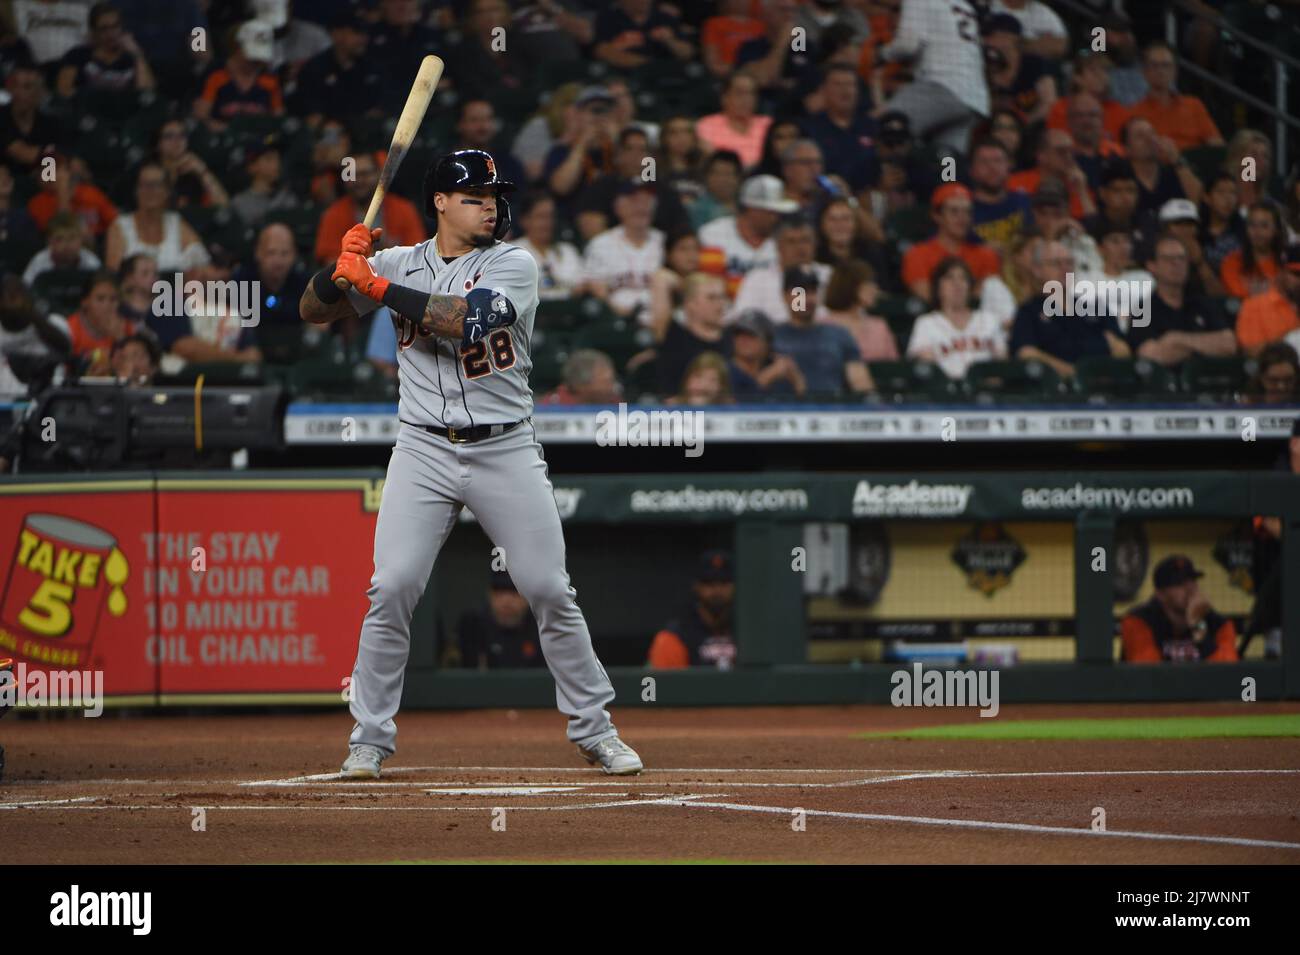 La partita MLB tra gli Houston Astros e i Detroit Tigers giovedì 6 maggio 2022 al Minute Maid Park di Houston, Texas. Gli Astros sconfissero il Tig Foto Stock